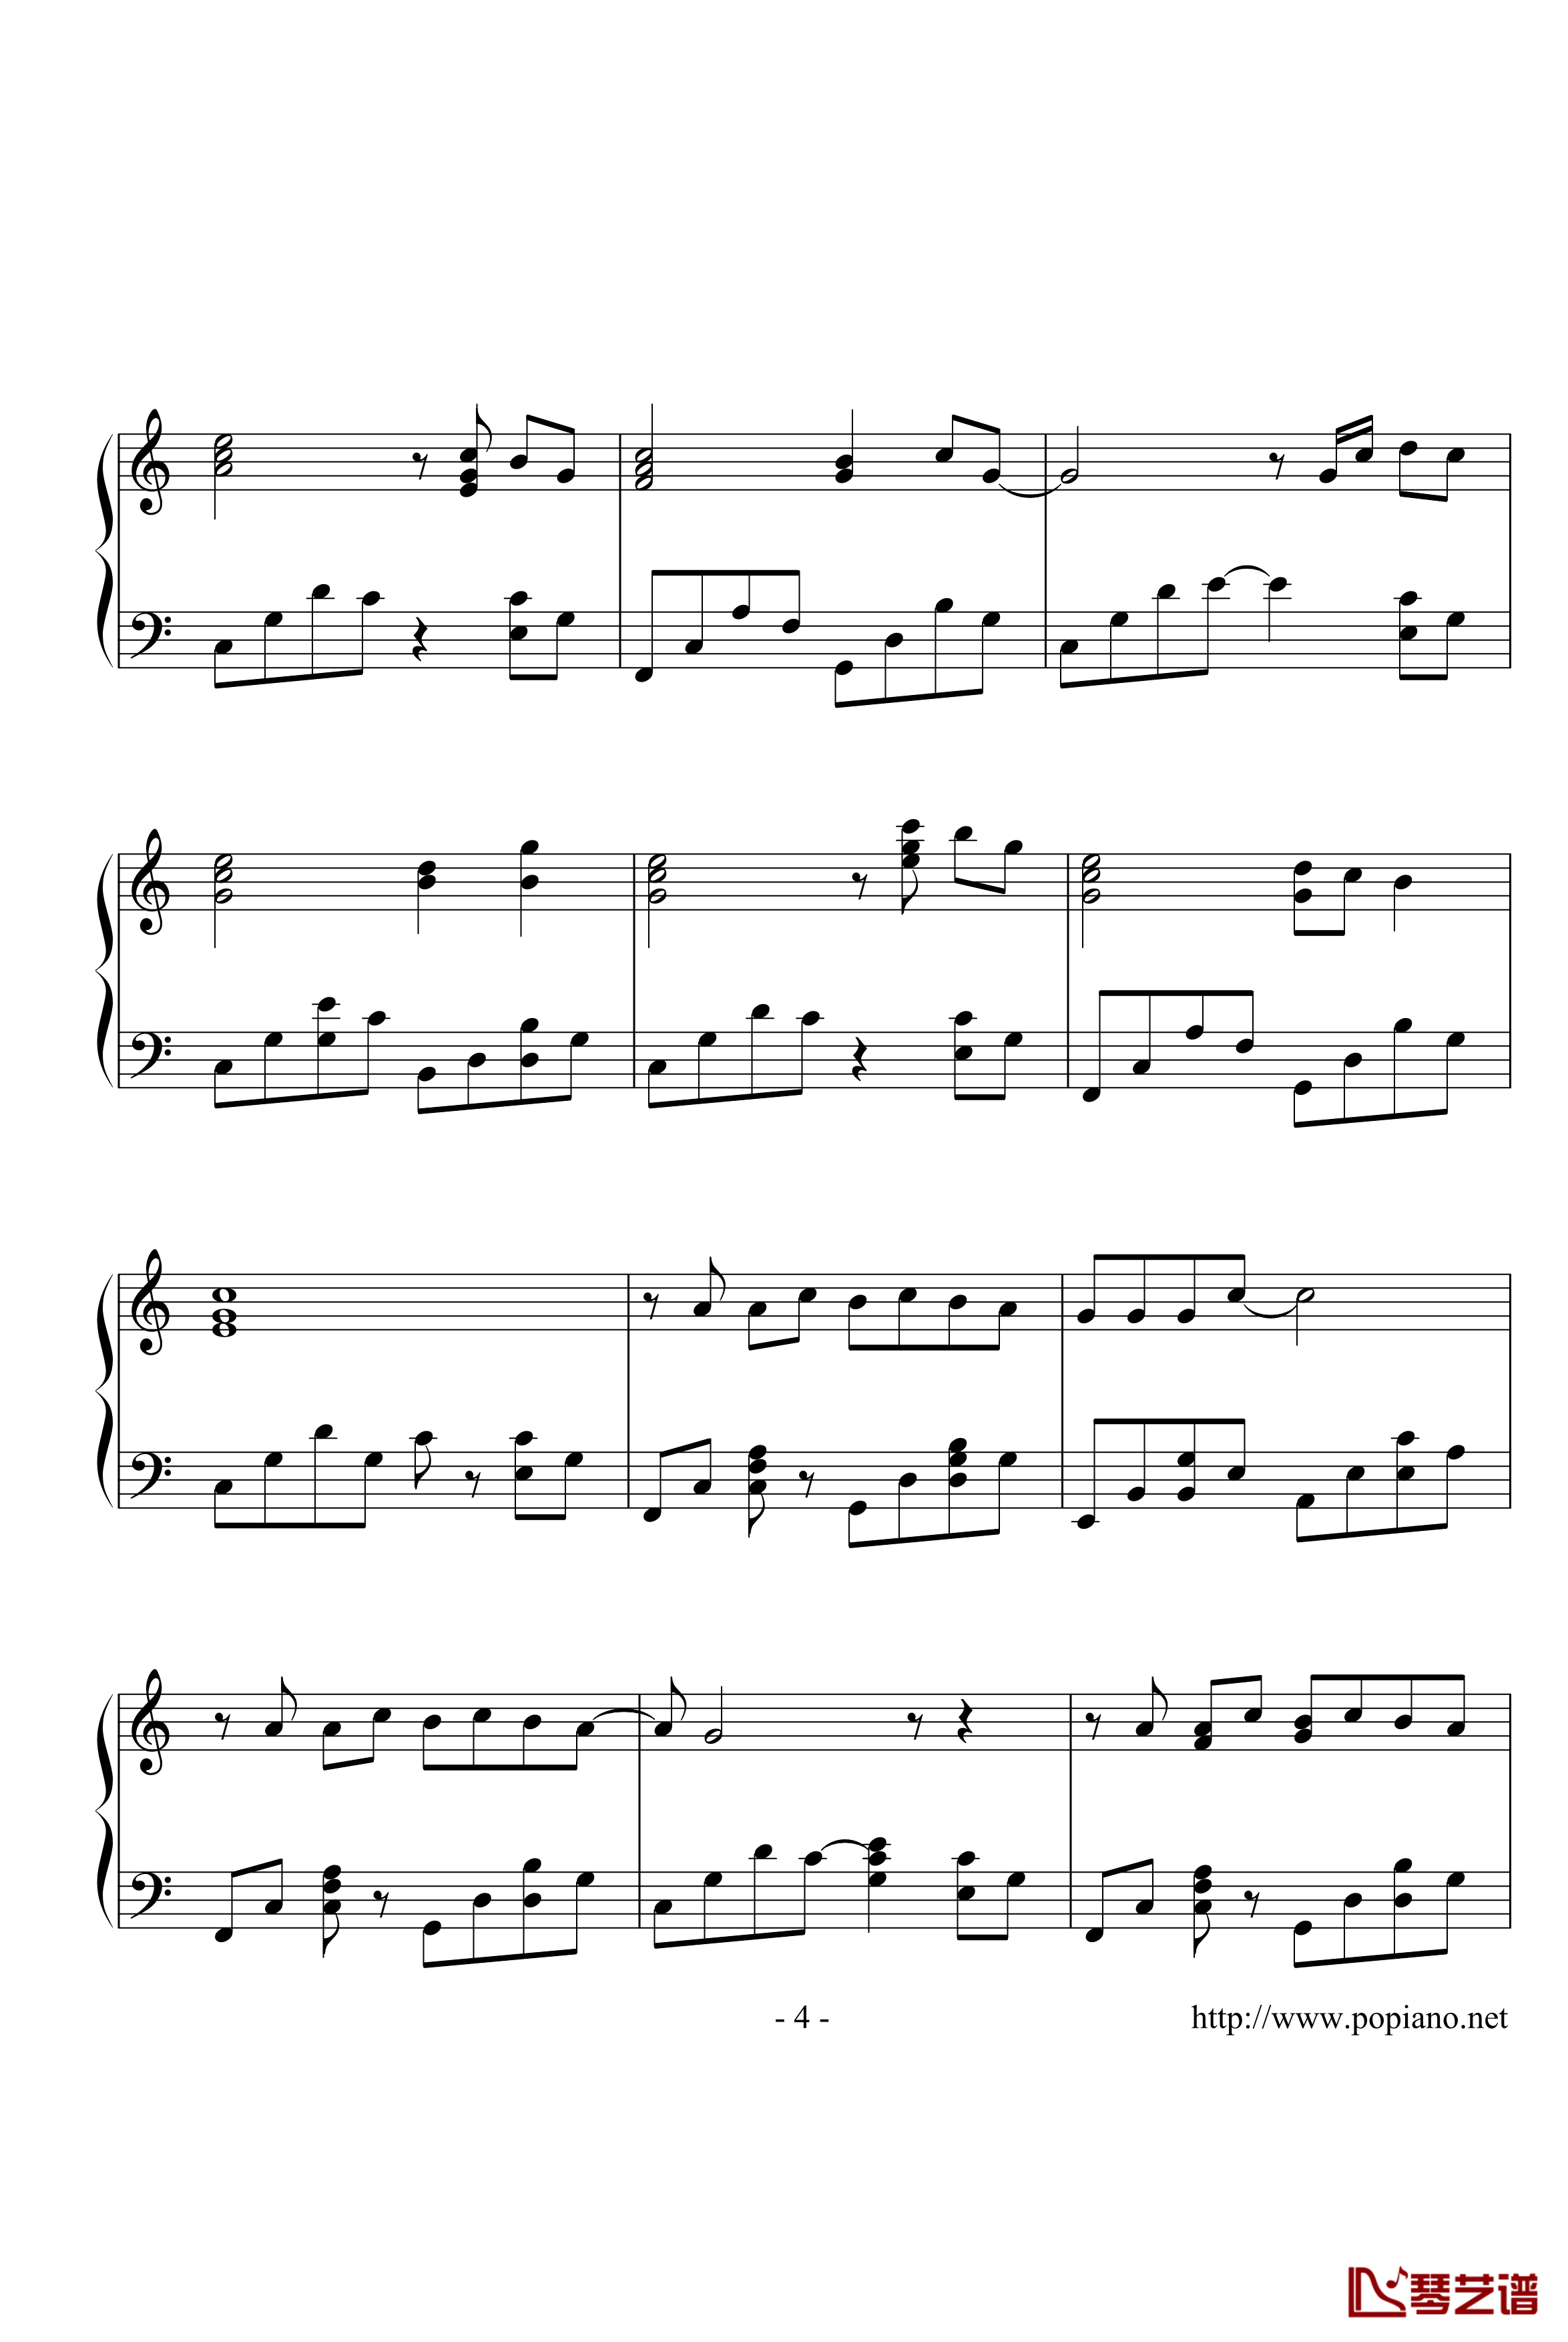 棉花糖钢琴谱-演奏版-至上励合4